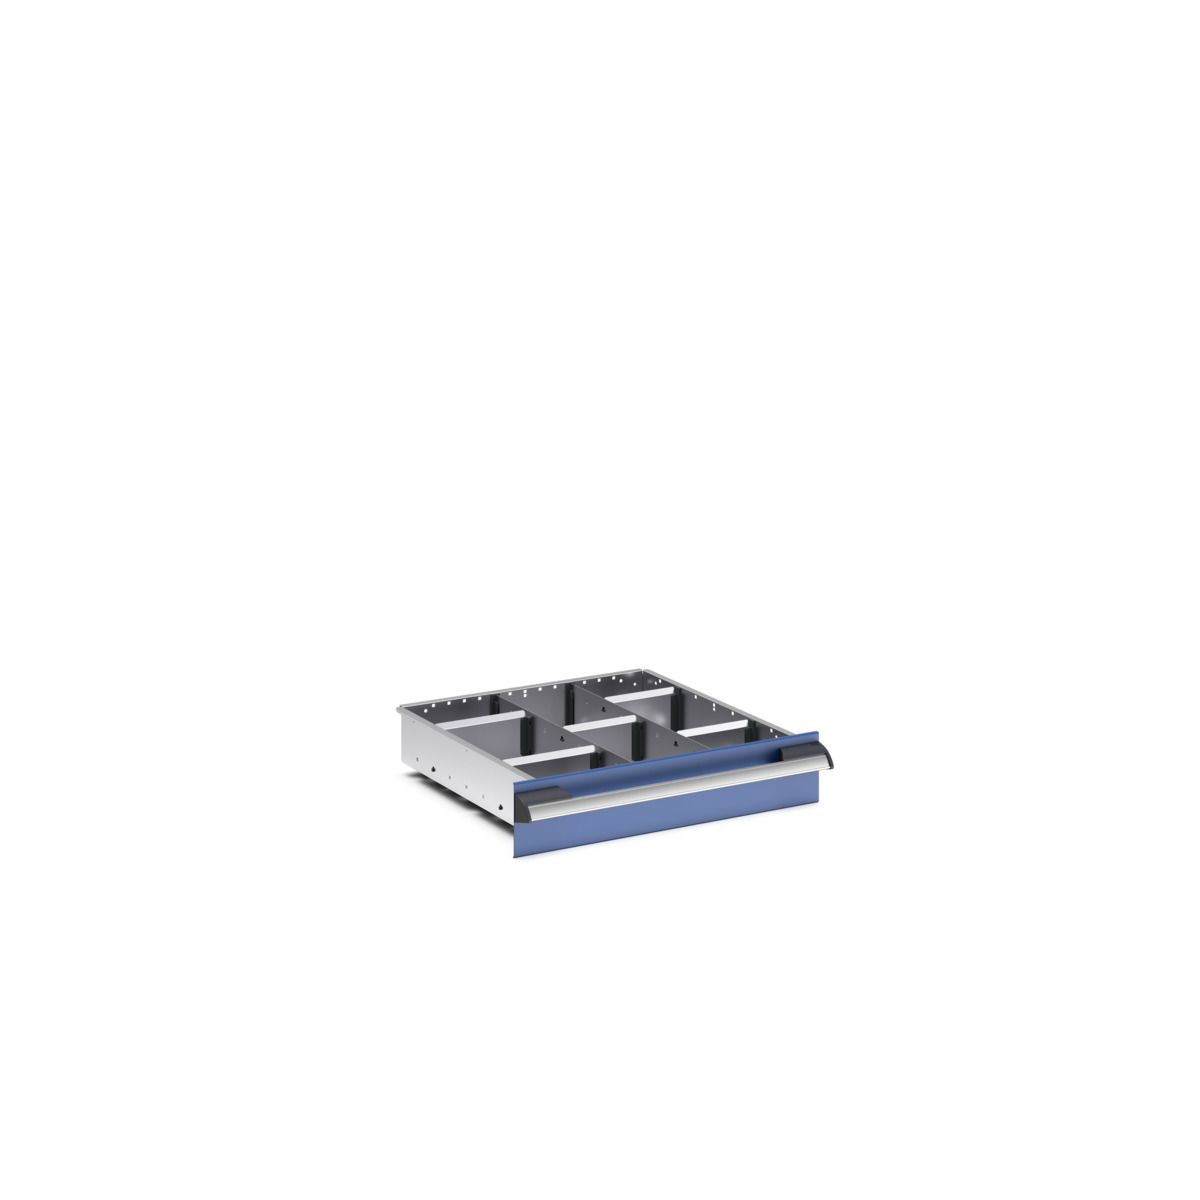 43020625.51 - cubio adjustable divider kit